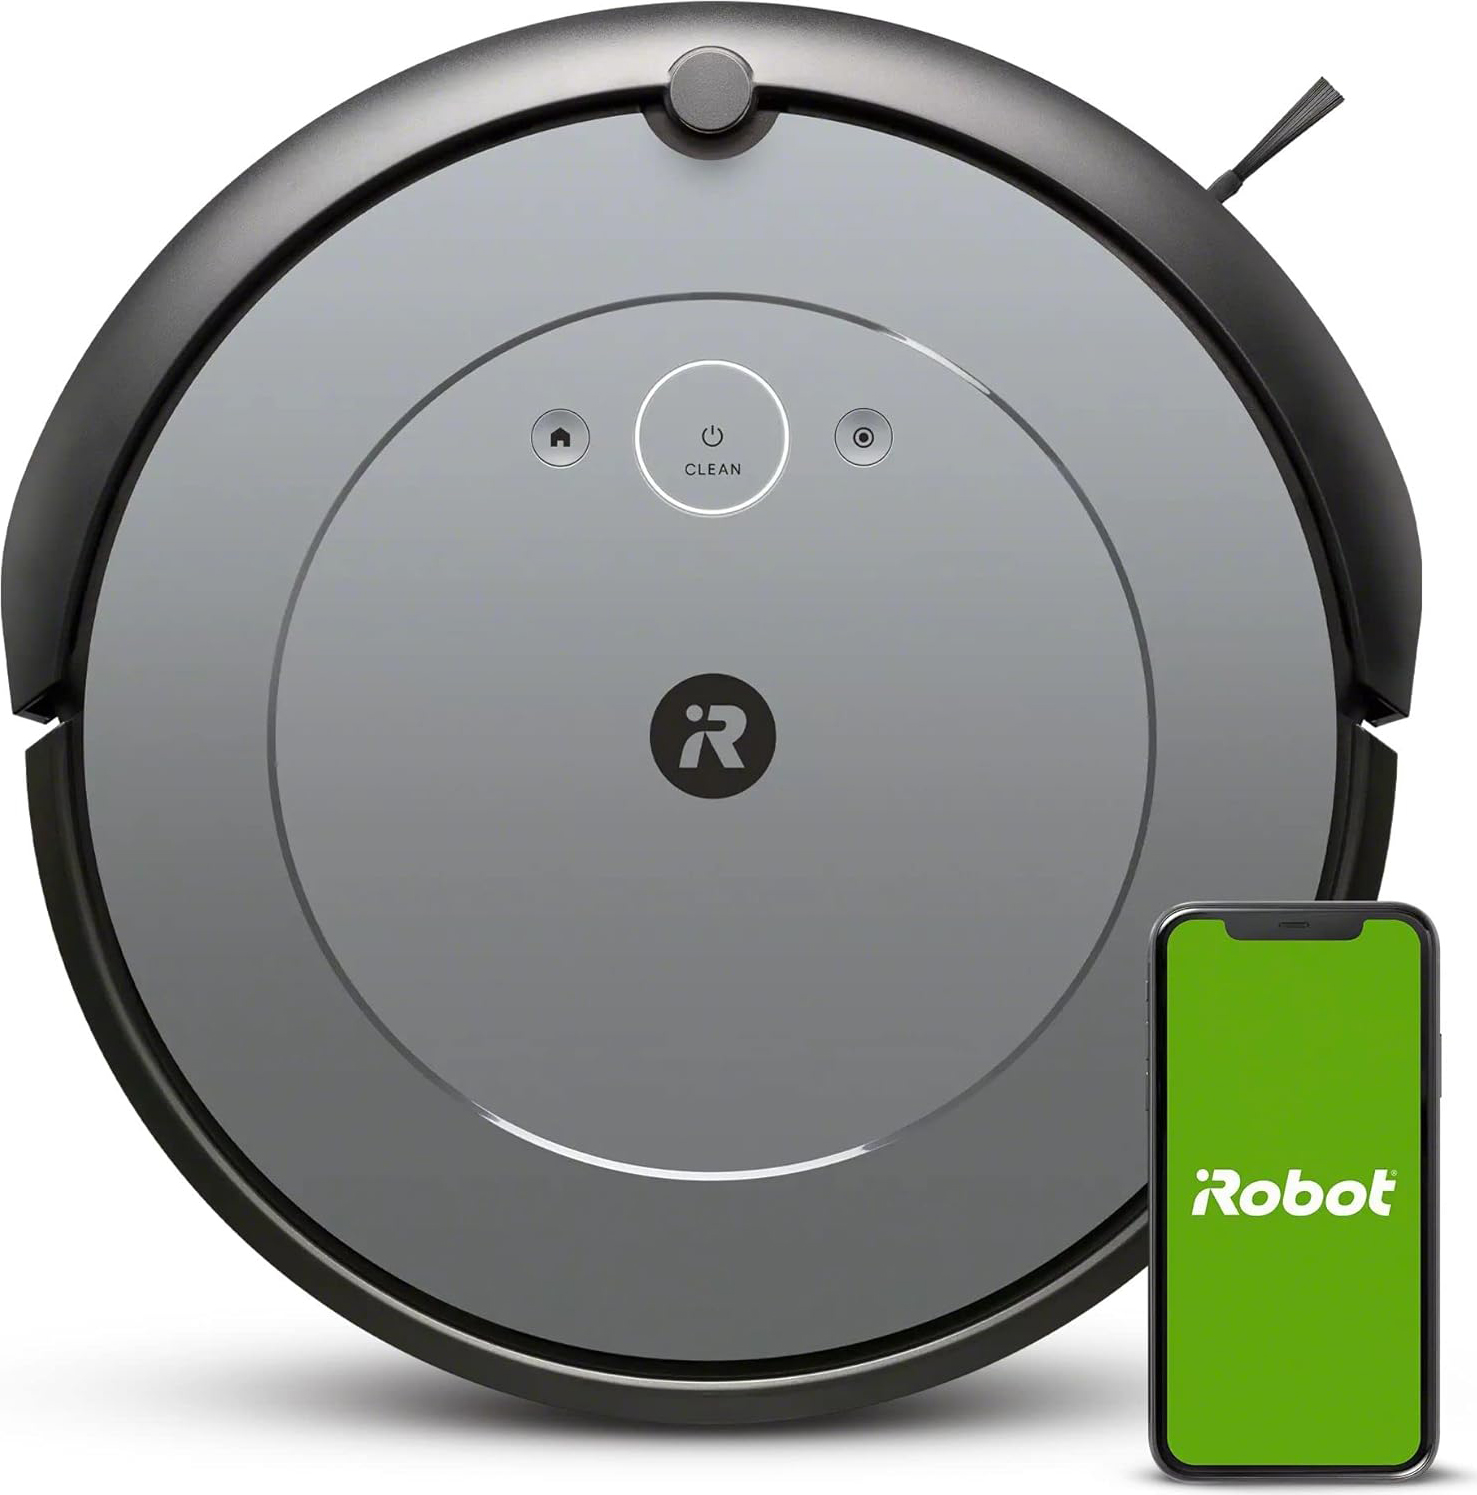 iRobot Robot Aspirapolvere senza Sacco Contenitore polvere 0.4 Litri, Wi-Fi  colore Grigio Grigio - i115840